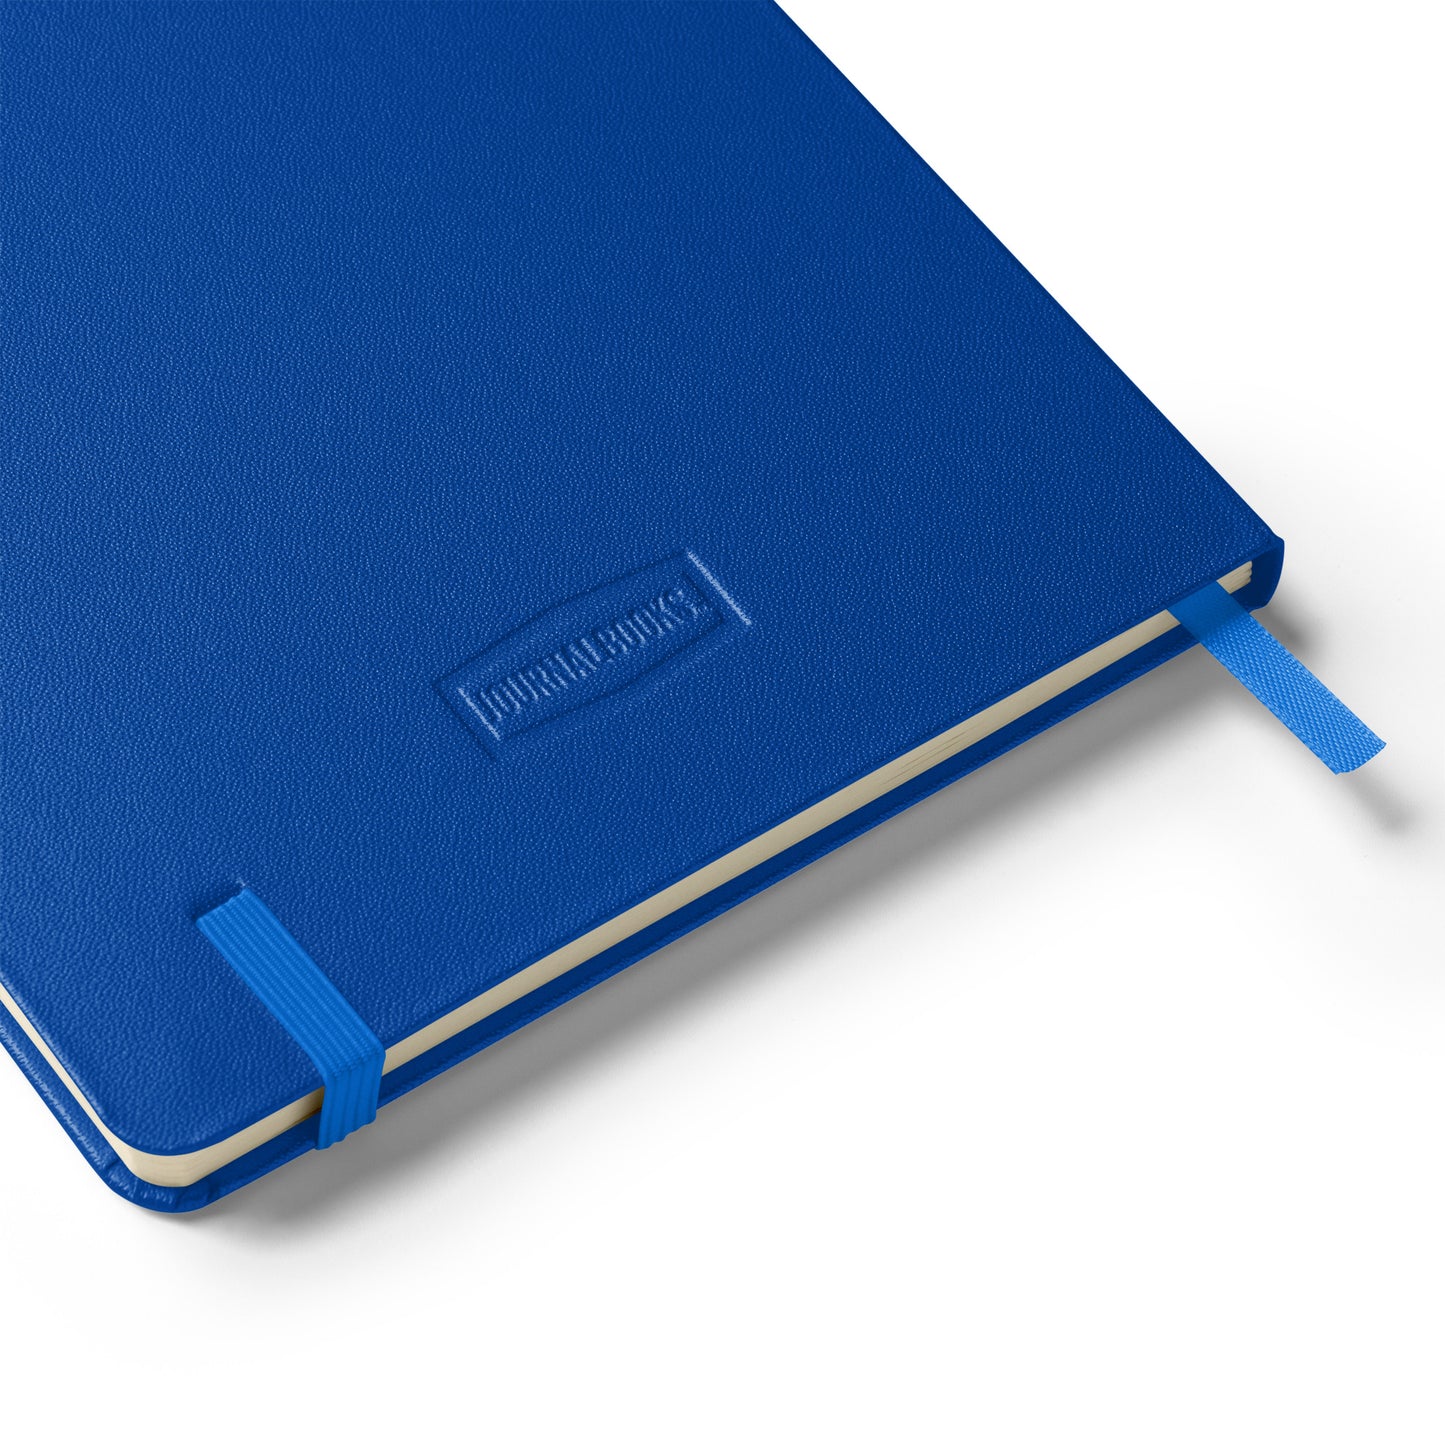 BM Hardcover Blue Journal